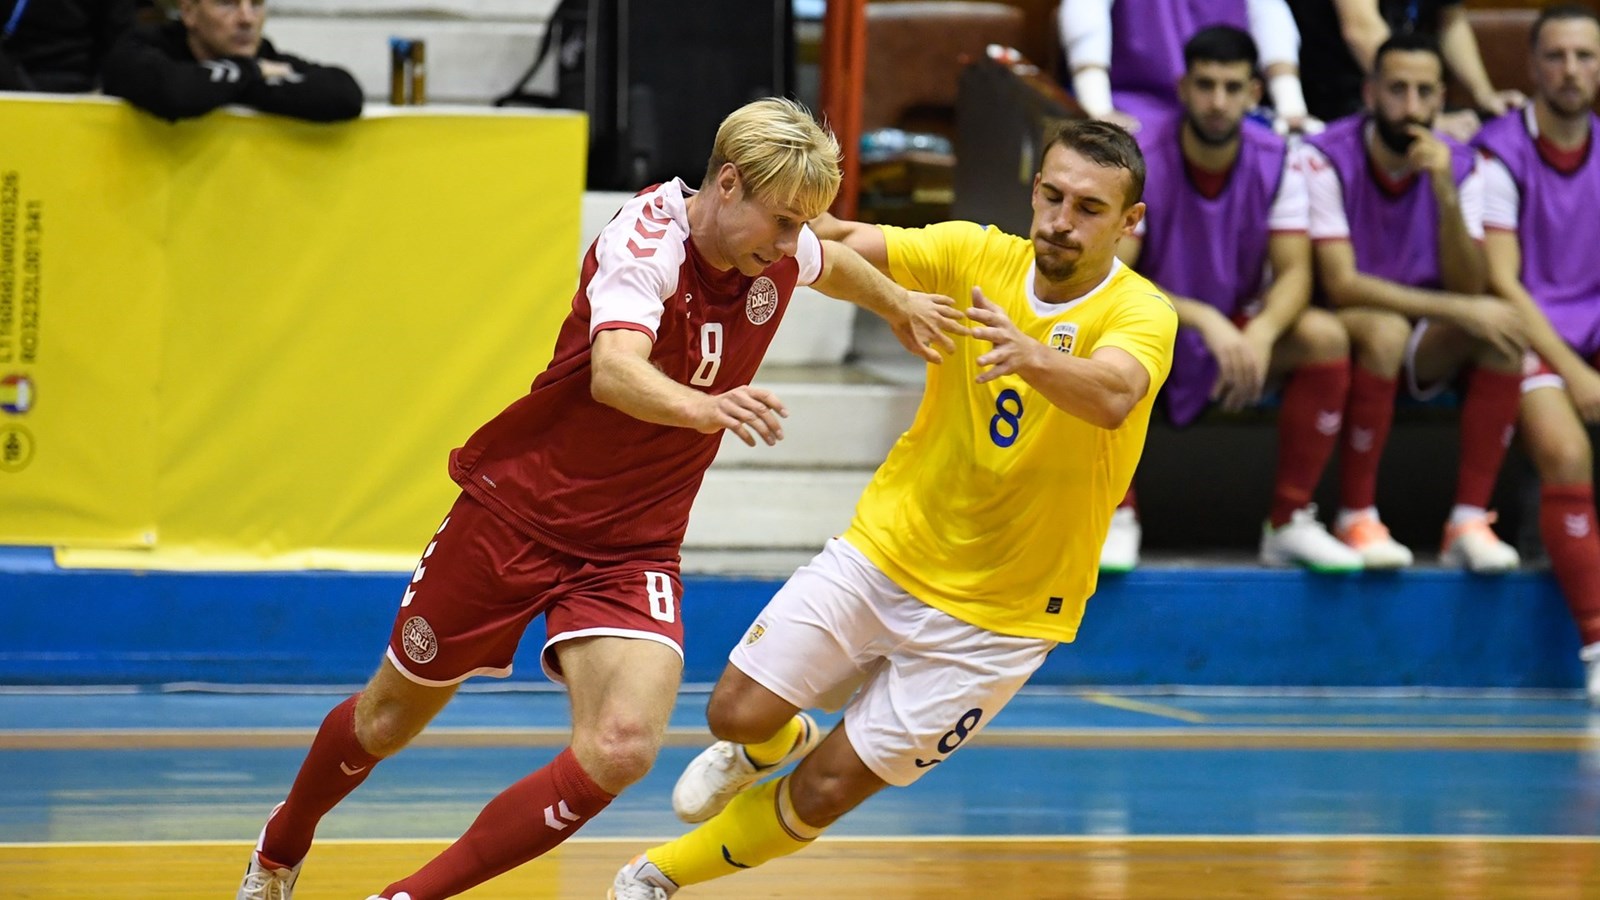 Futsallandsholdet er klar til VM-kvalifikation på hjemmebane